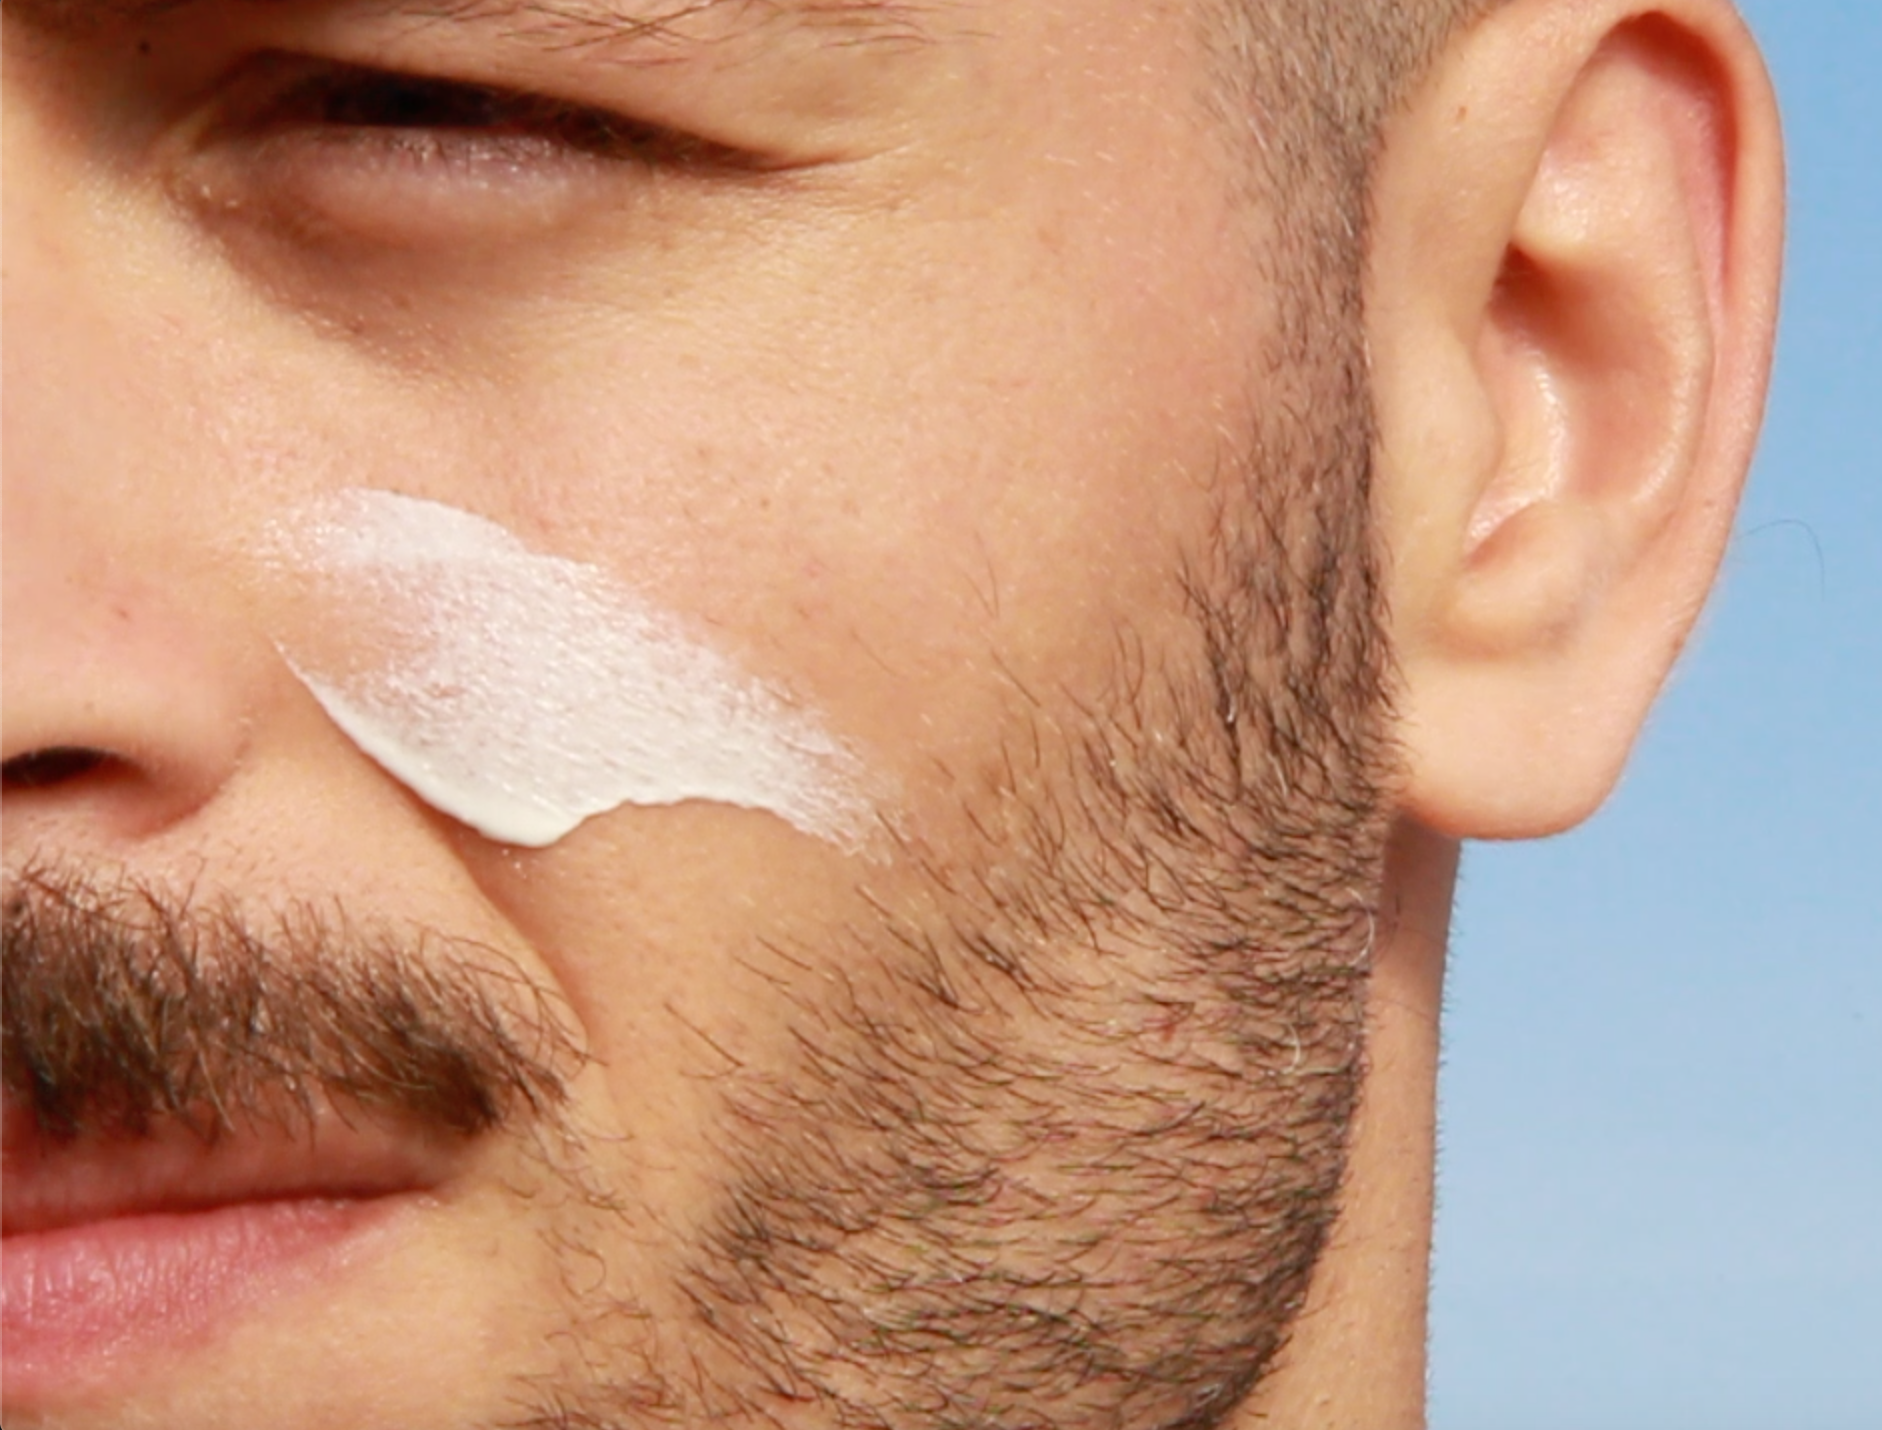 Men's facial care tips